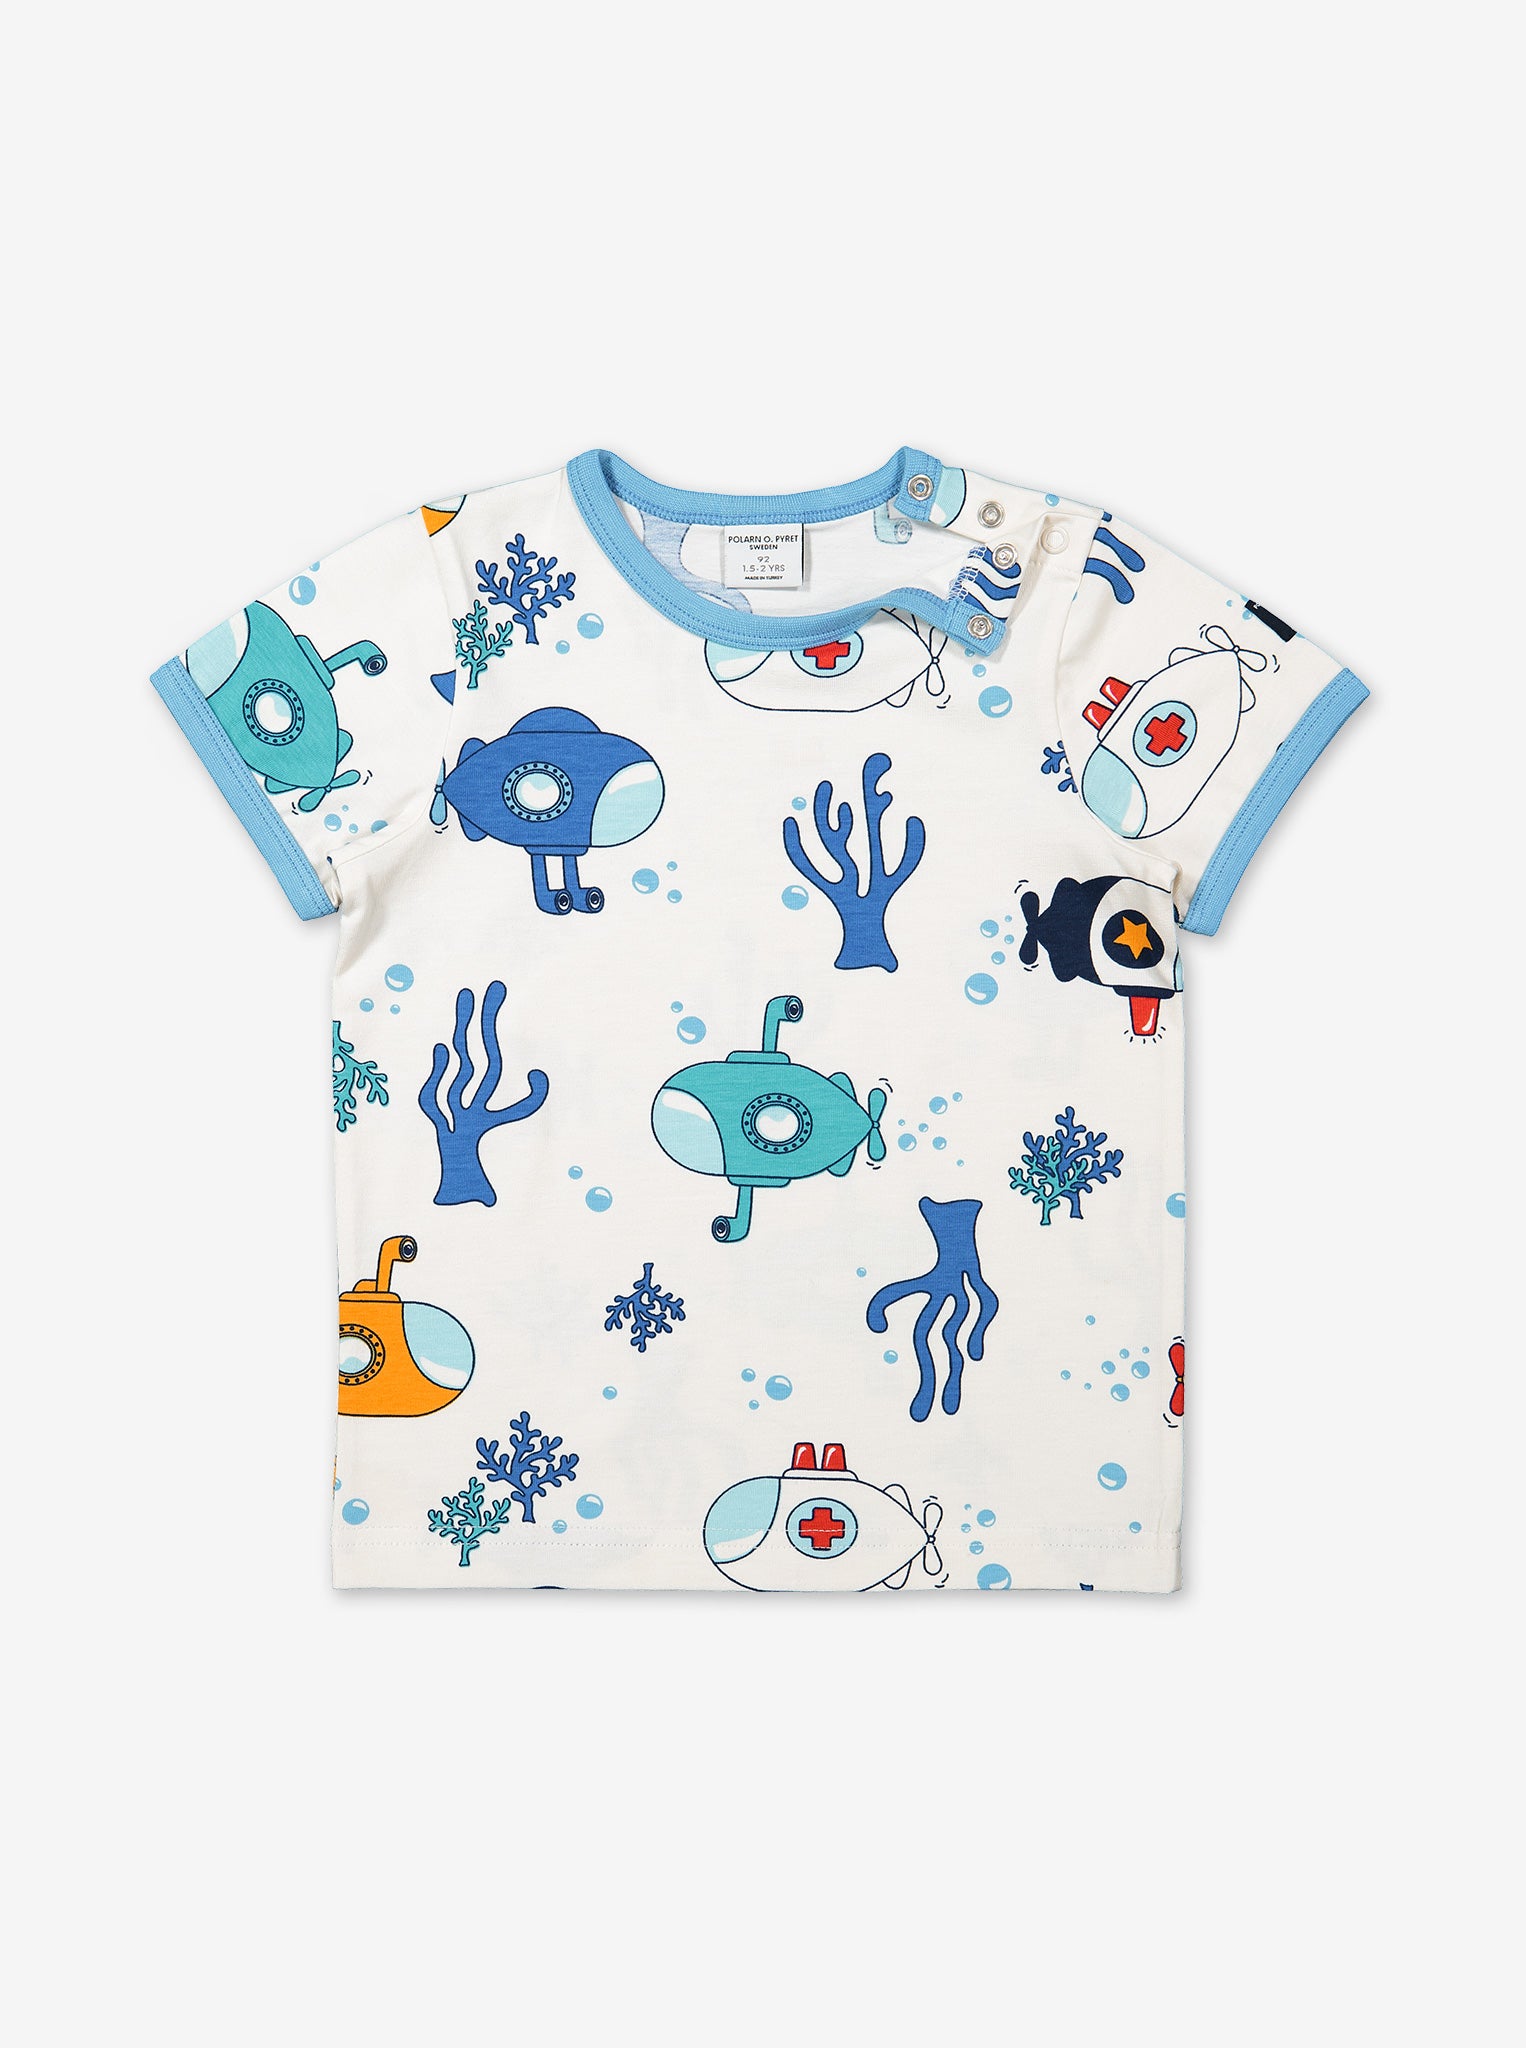 Submarine Print Kids T-Shirt